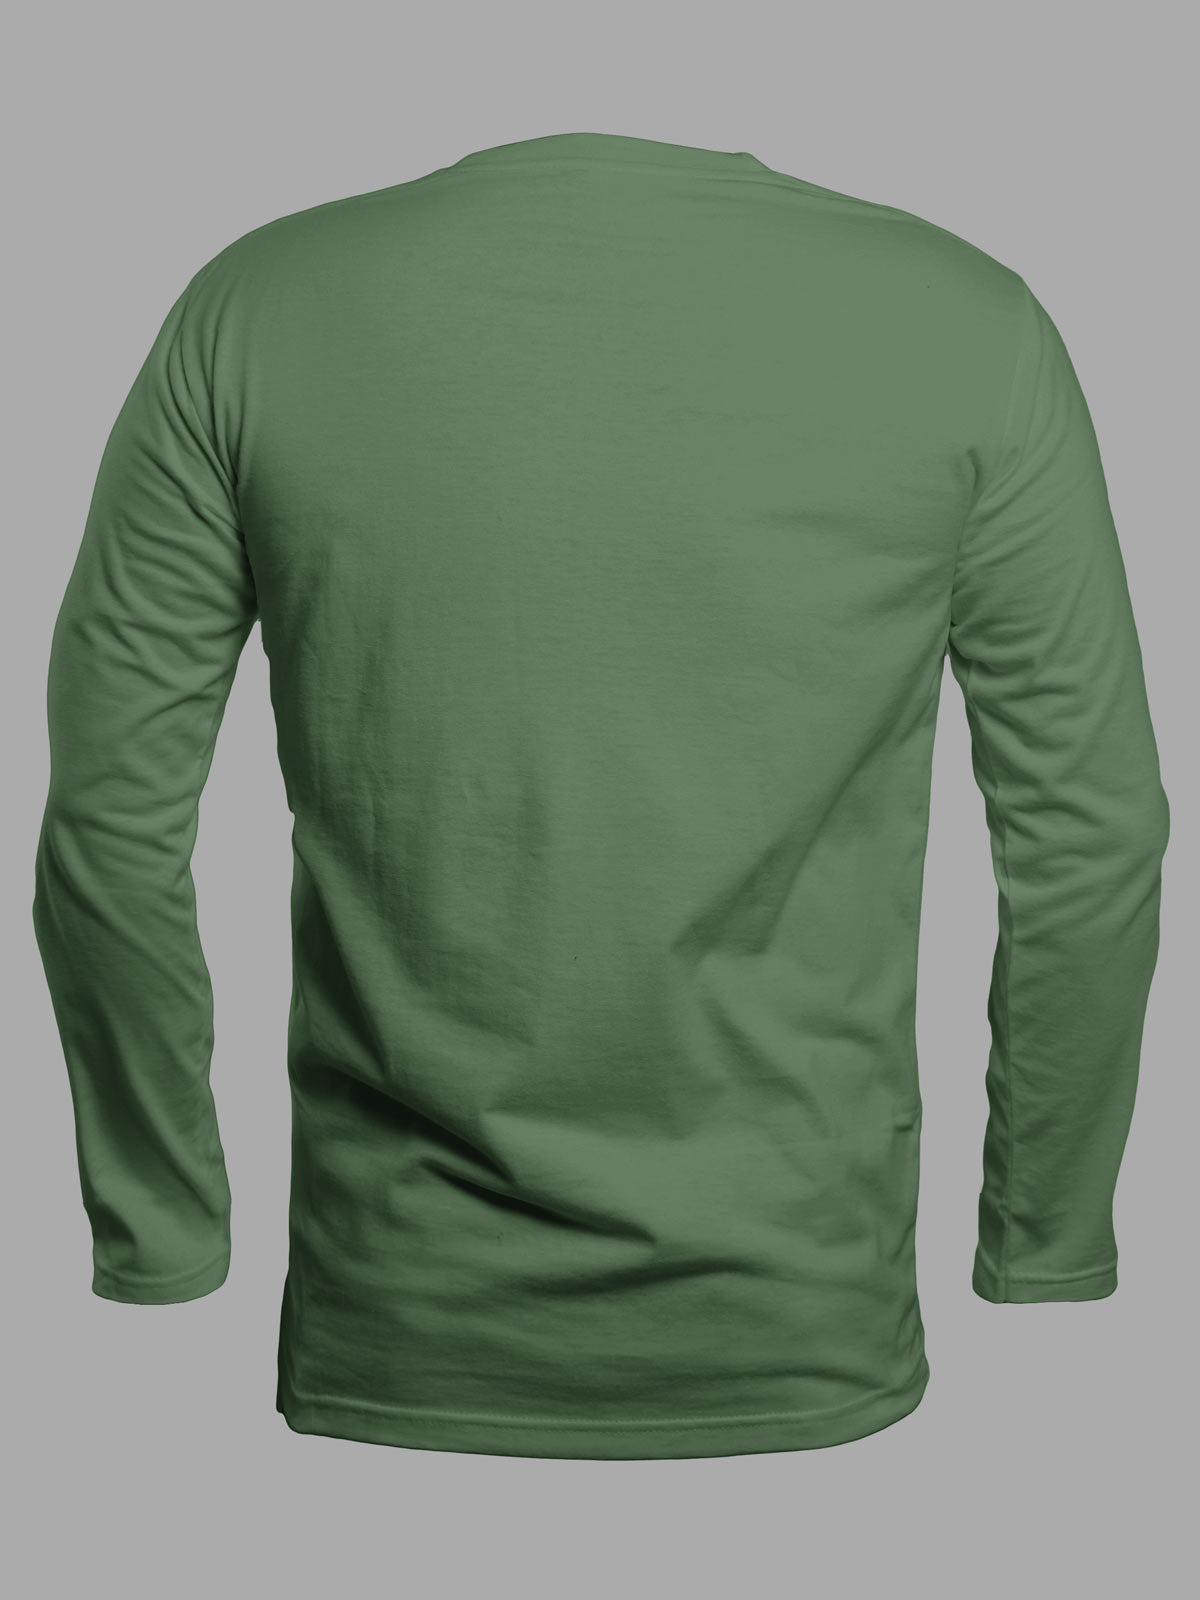 Green-full-sleeves-t-shirt